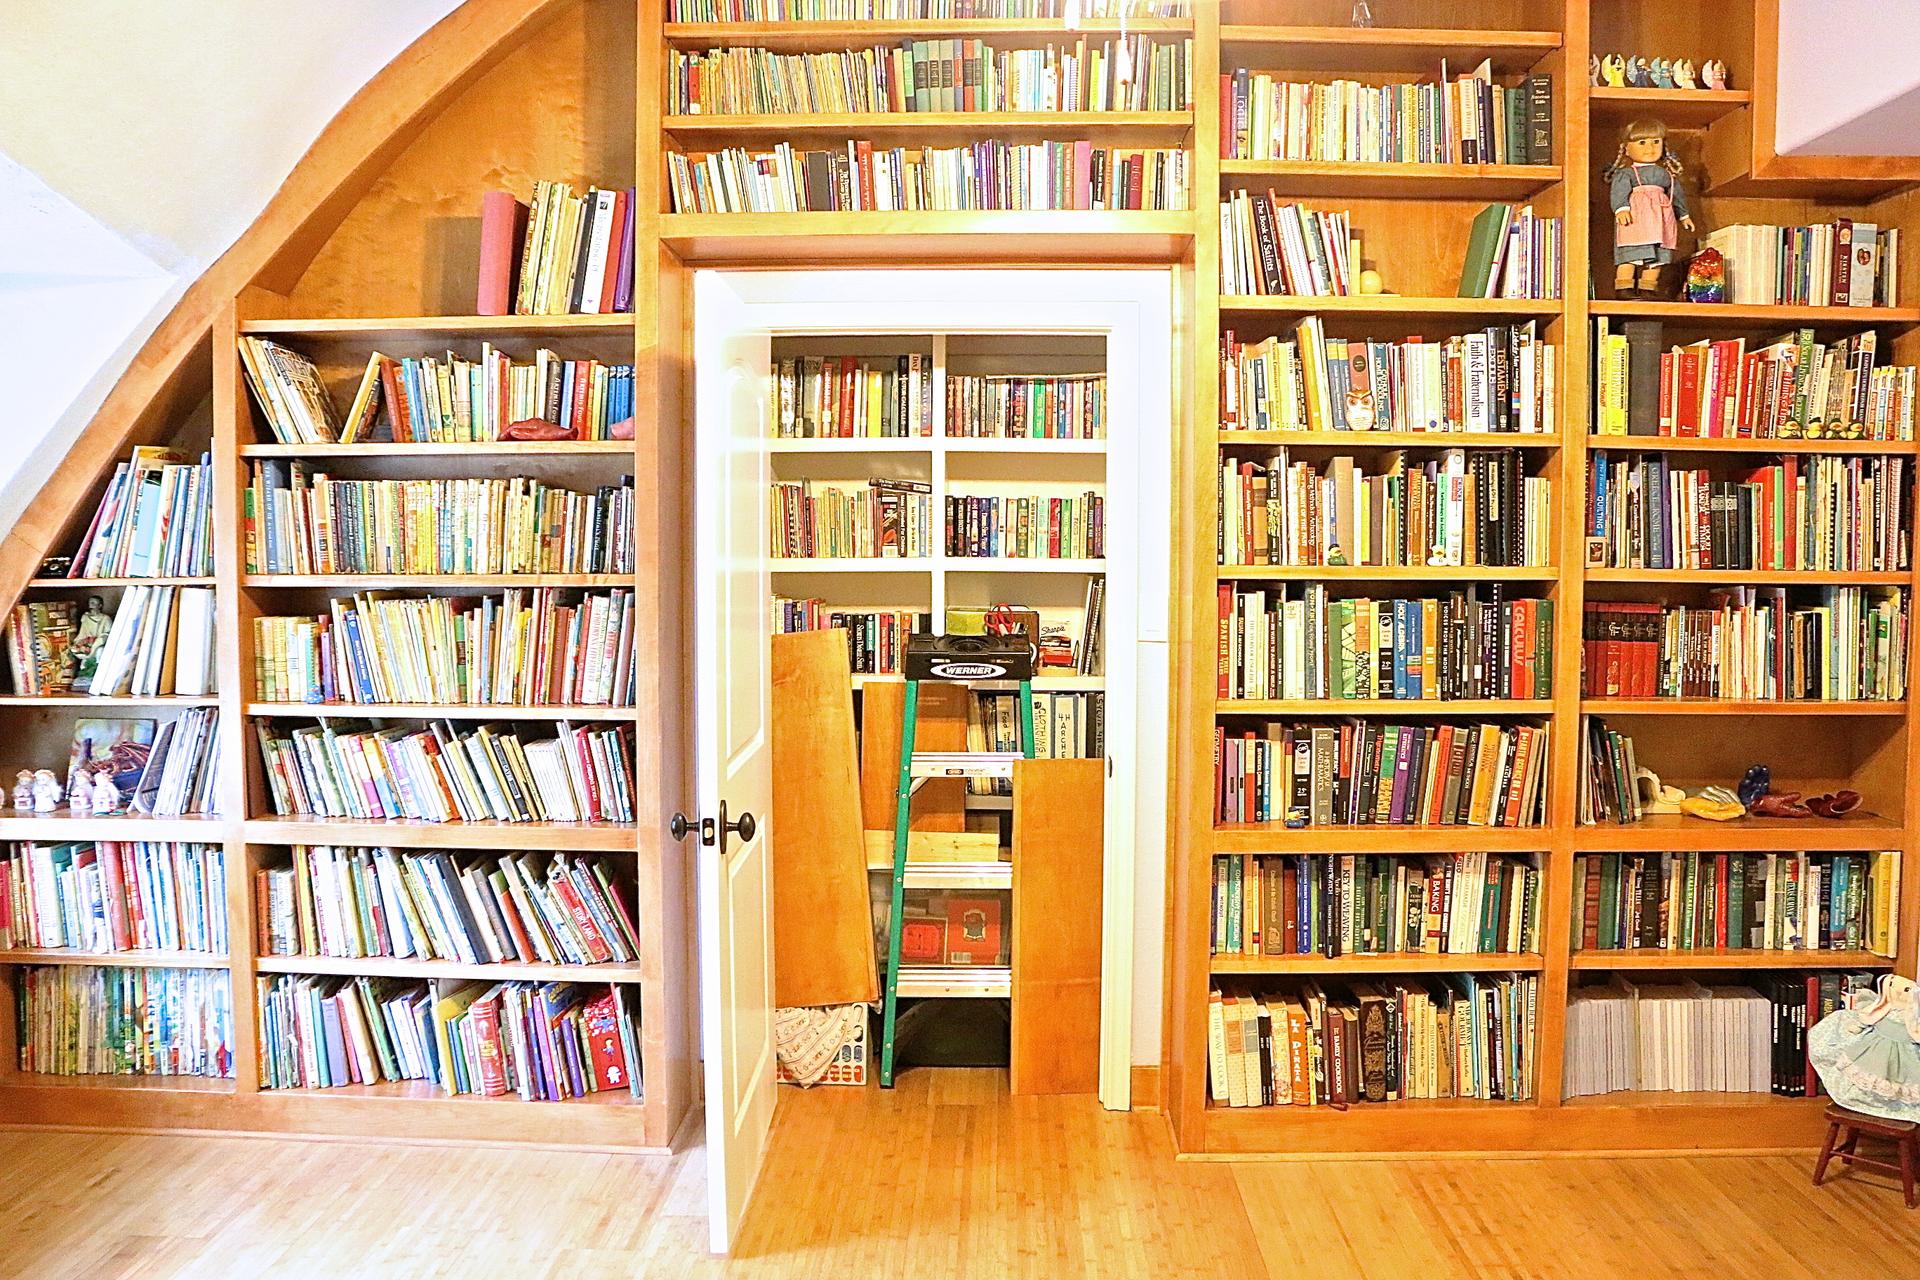 Door built into shelves leads to next room.